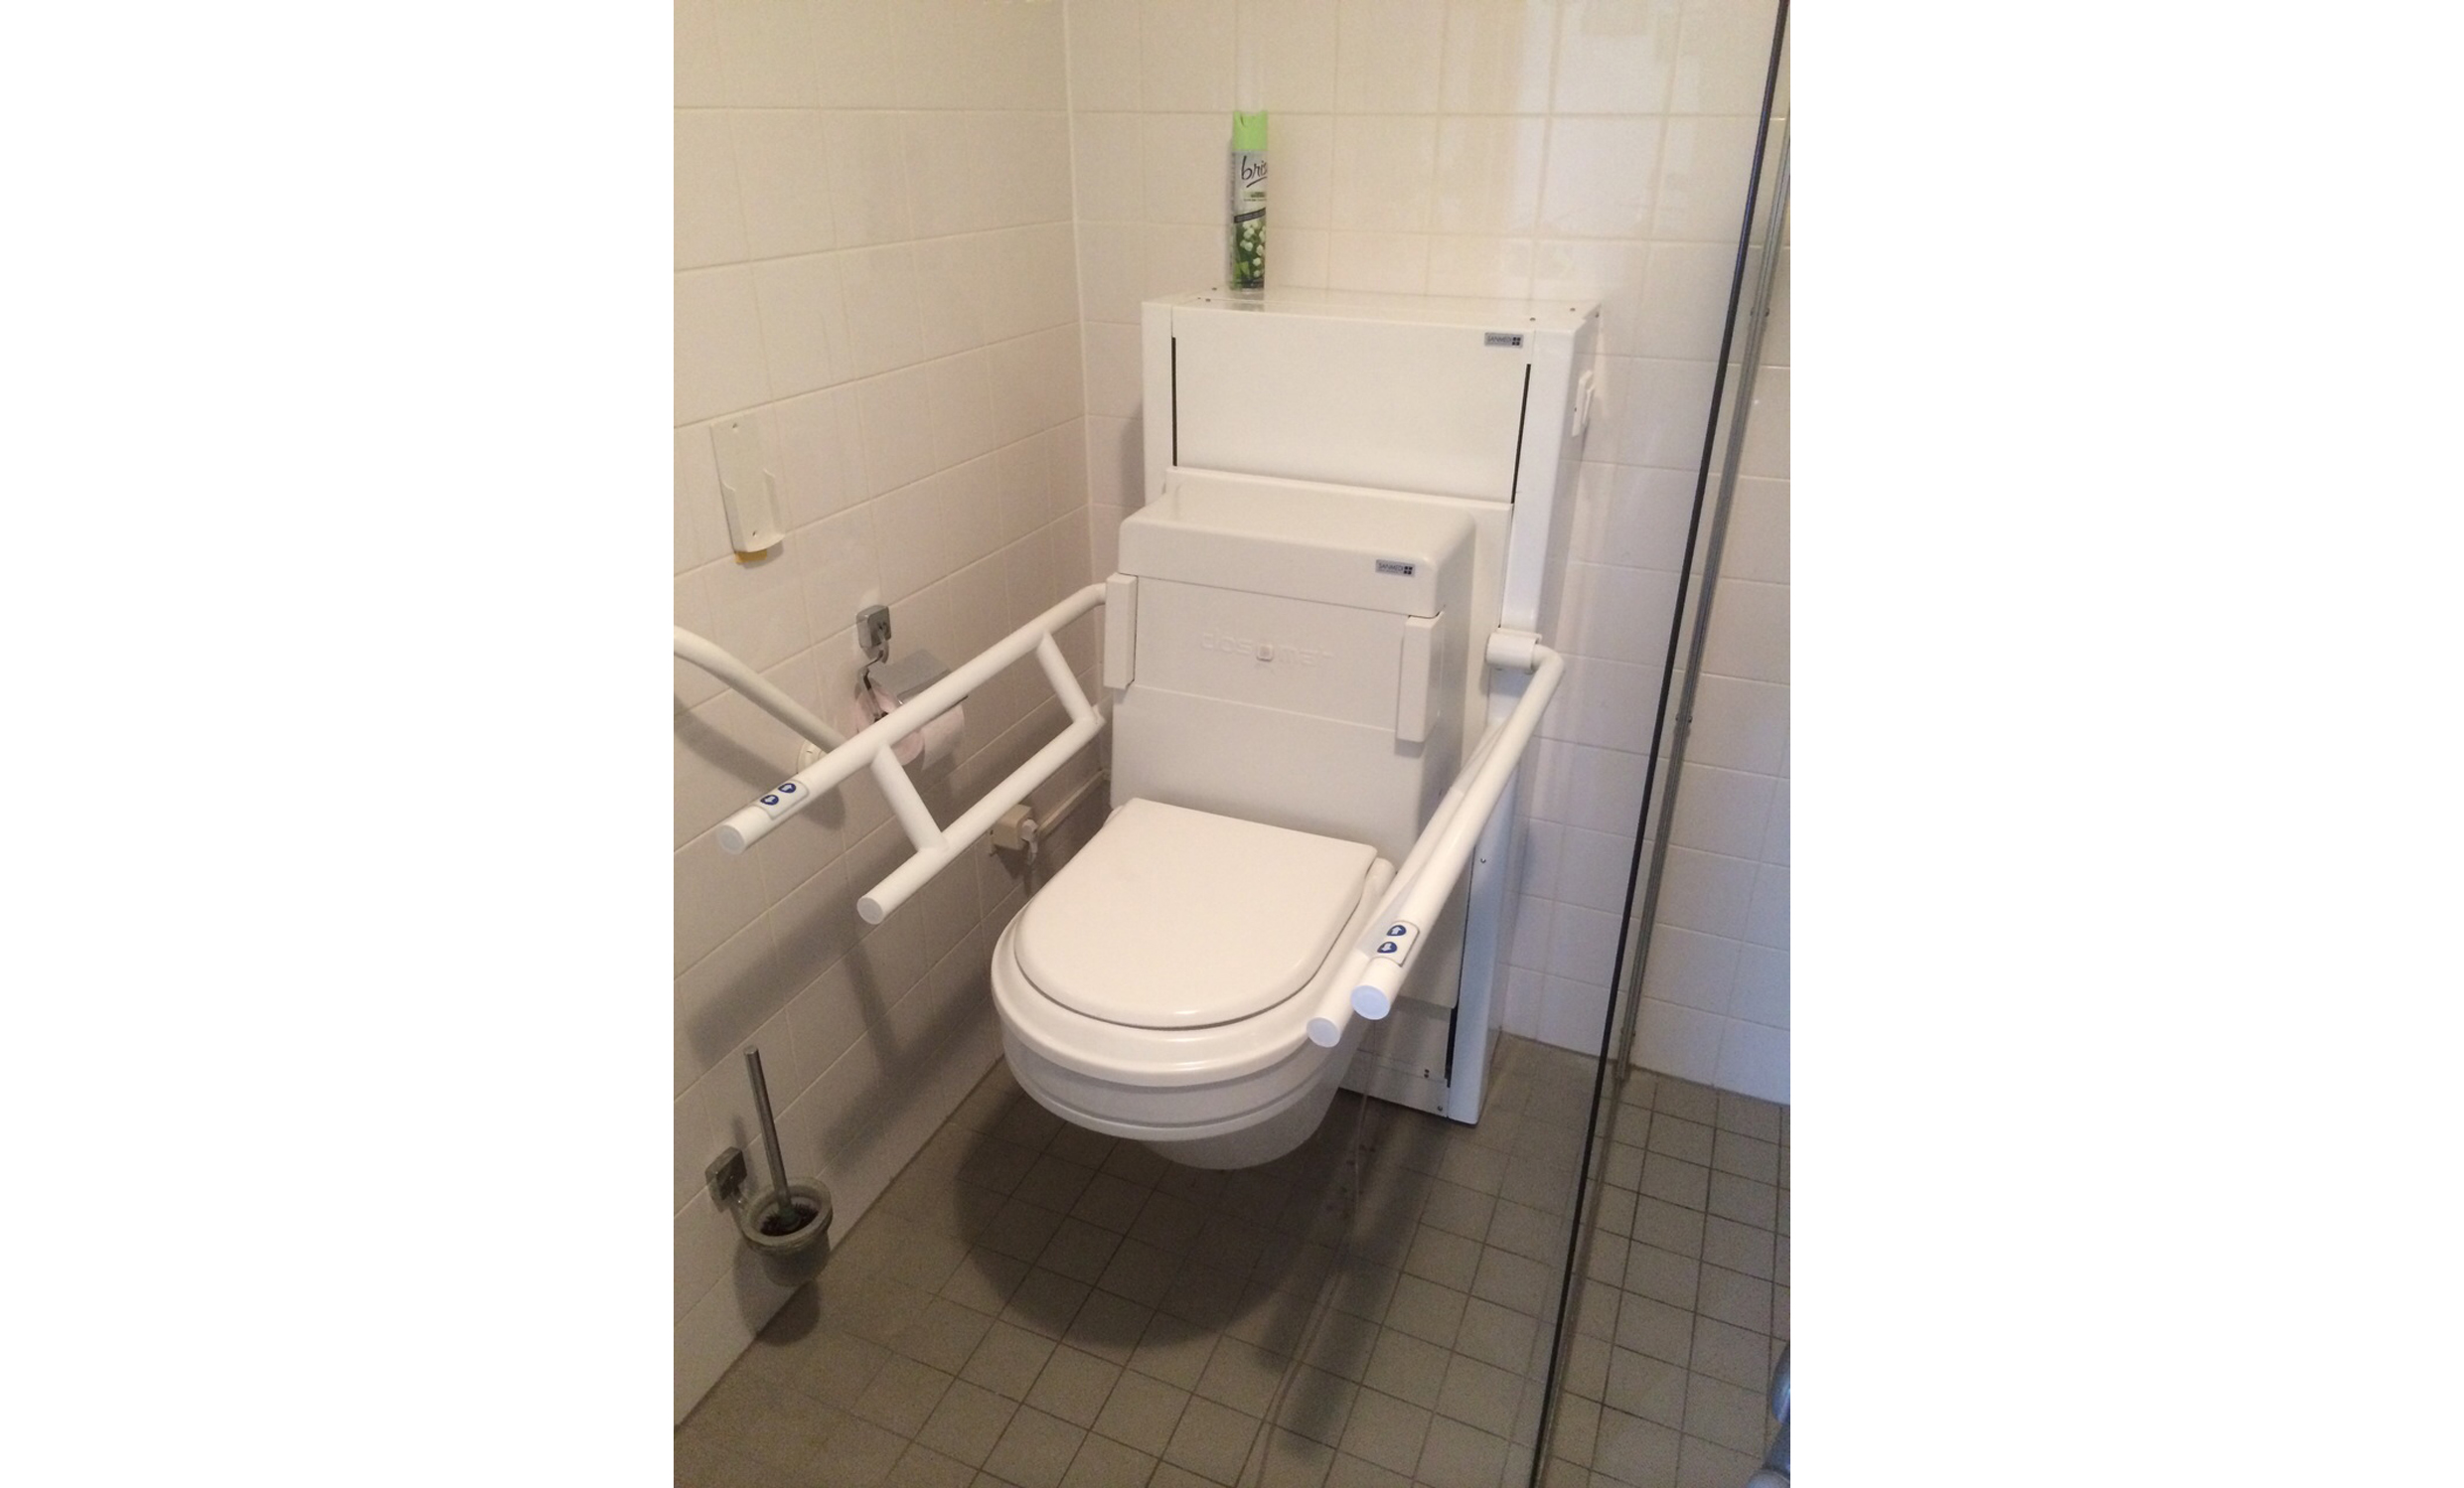 Elektrisch höhen- und neigungsverstellbare Lift Toilette mit Stütz-Klapp-Griffen in Aufputzmontage.